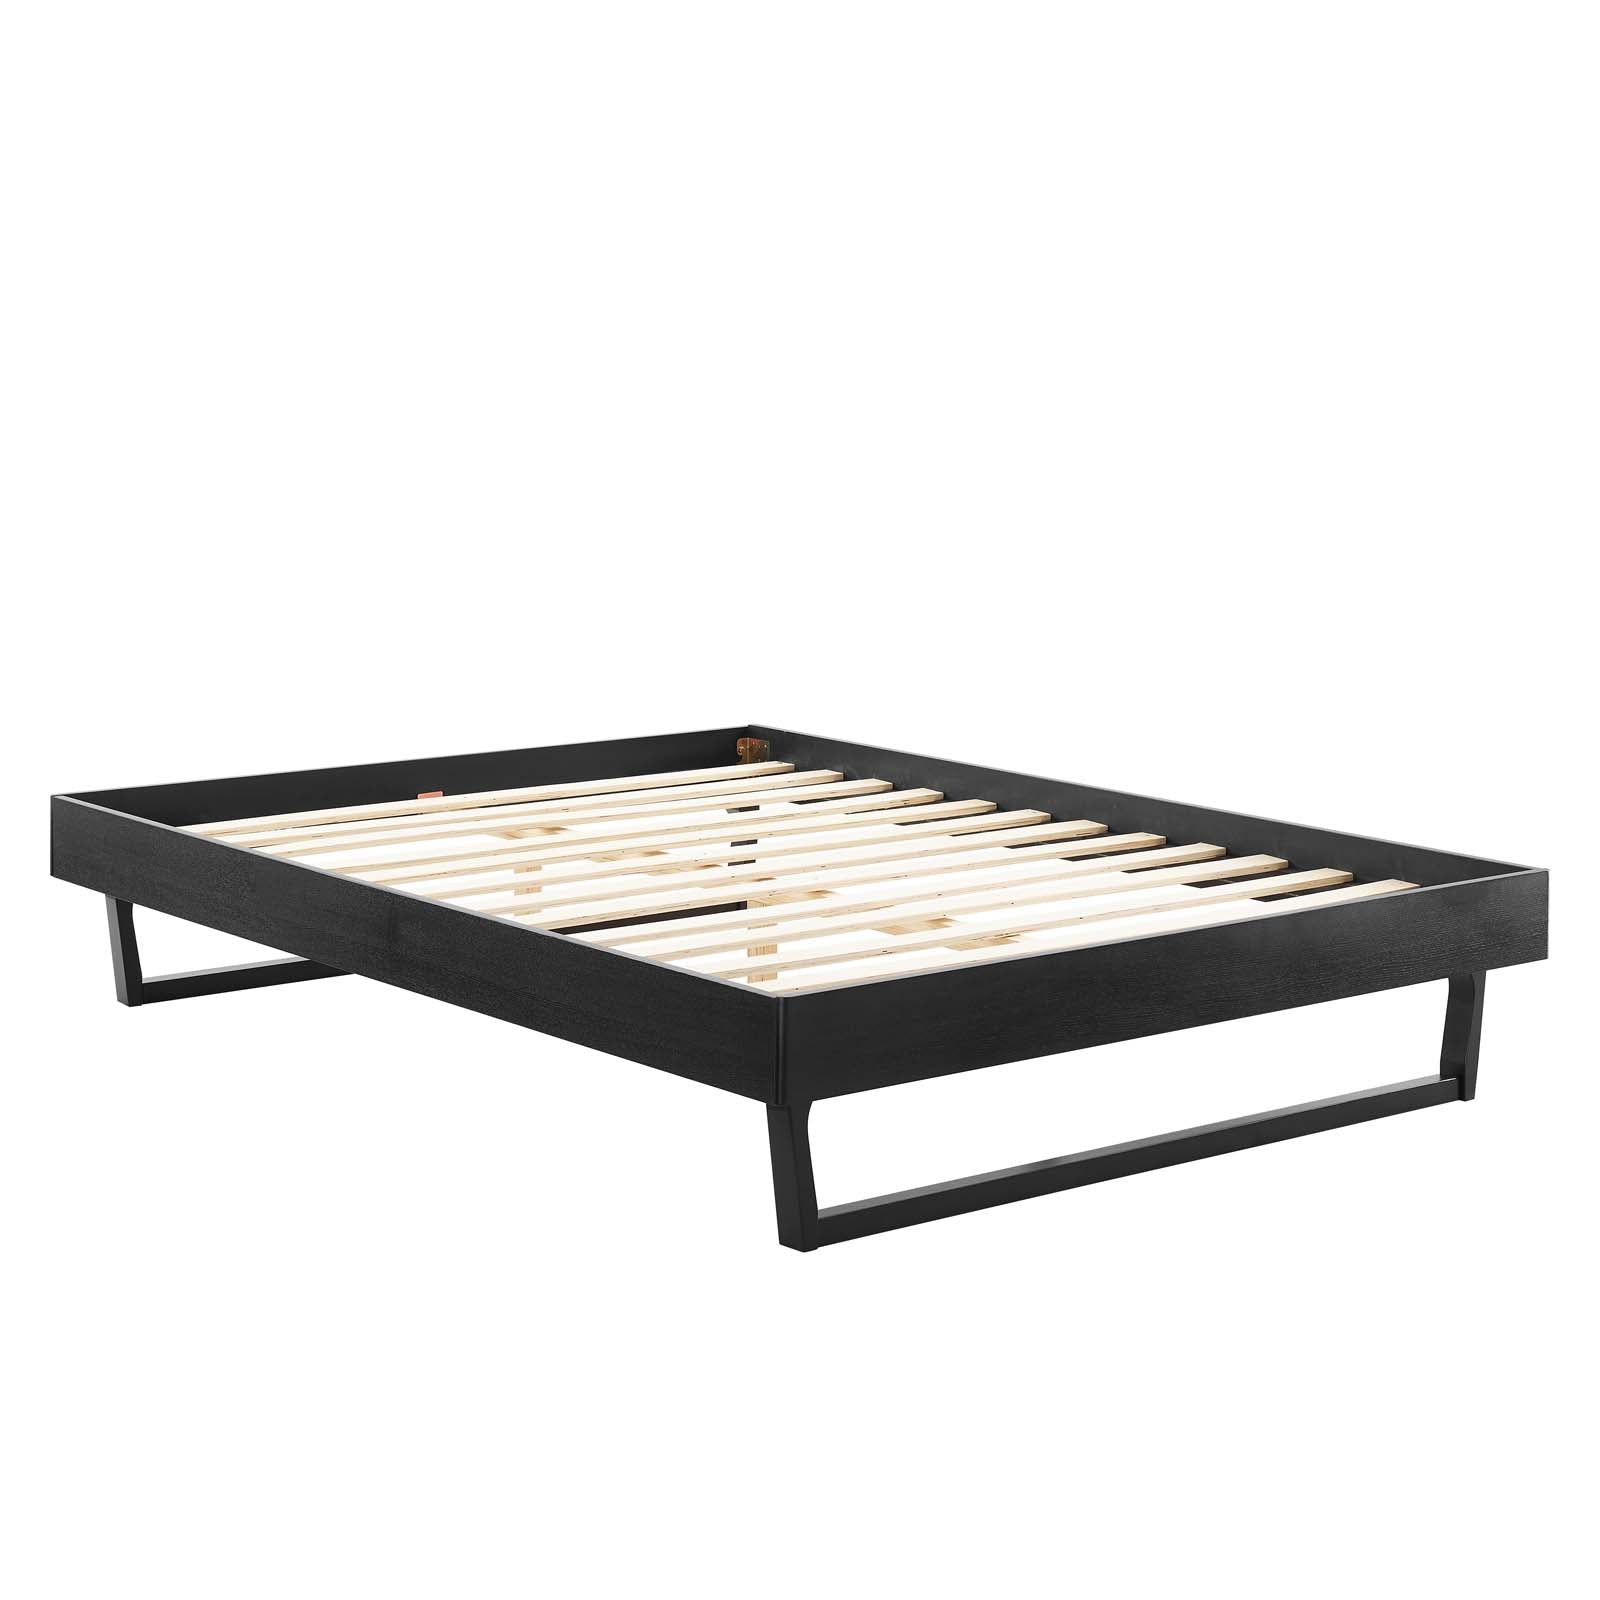 Modway Beds - Billie King Wood Platform Bed Frame Black